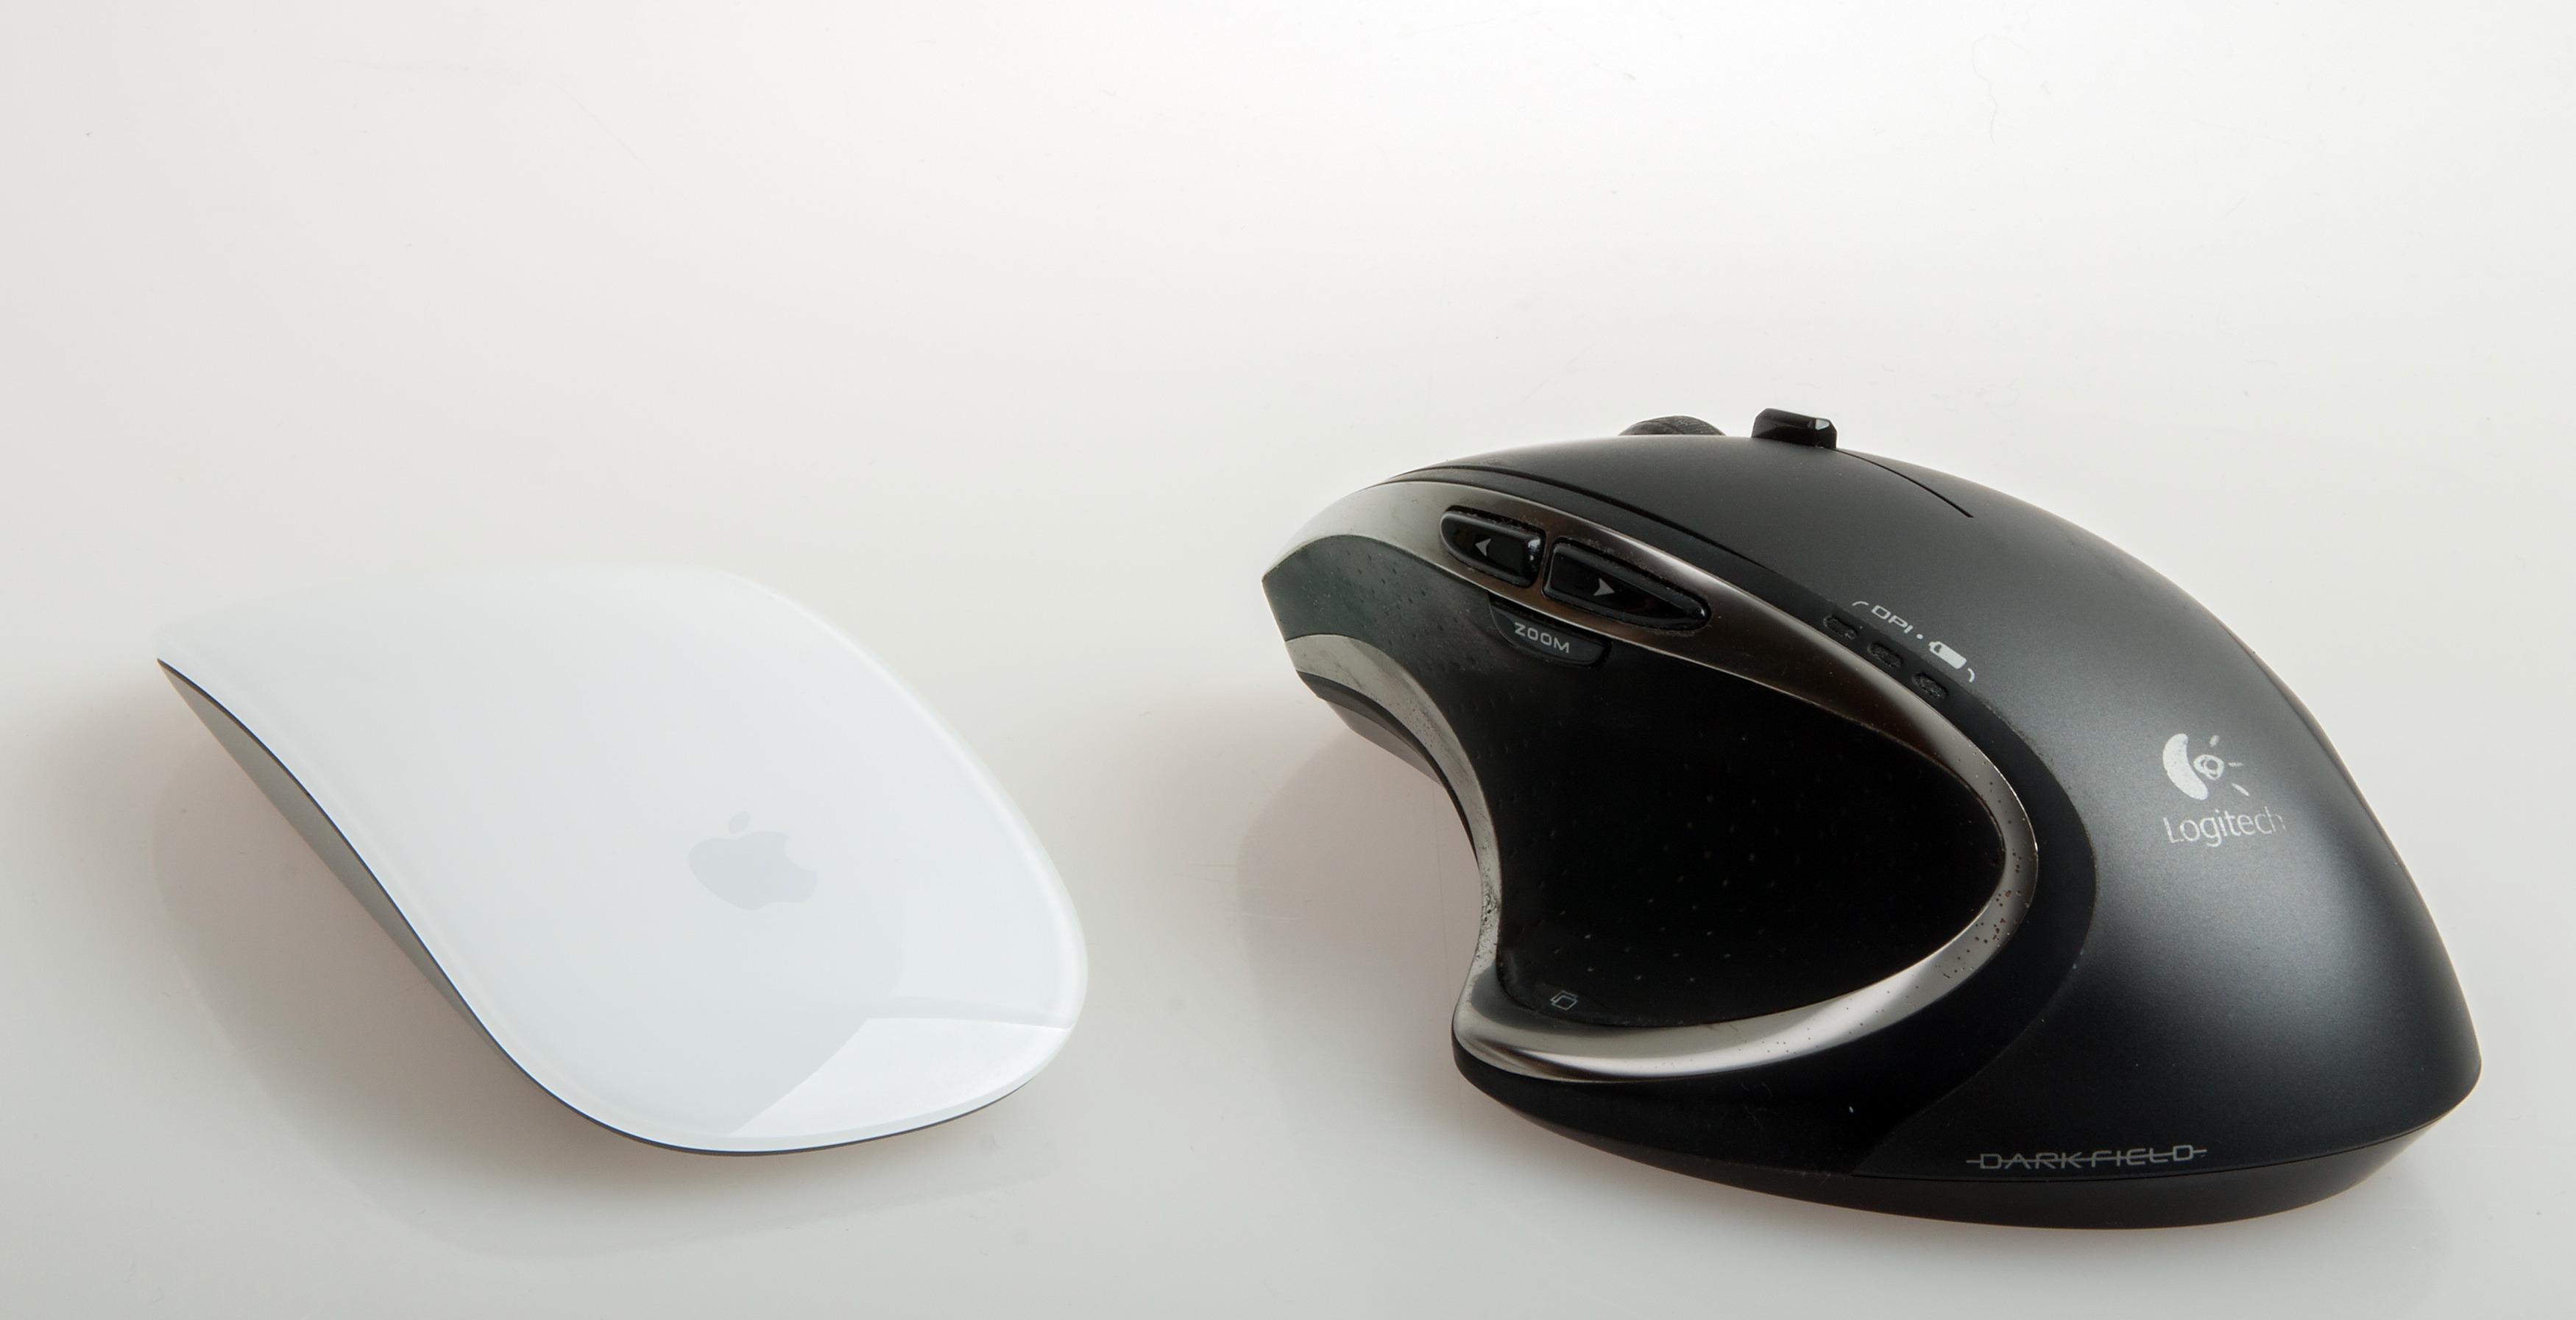 Logitech Performance MX (avbildet) – og nye MX Master – er en mye bedre mus, men den ser jo ikke like lekker ut som Magic Mouse 2. Foto: Kurt Lekanger, Tek.no